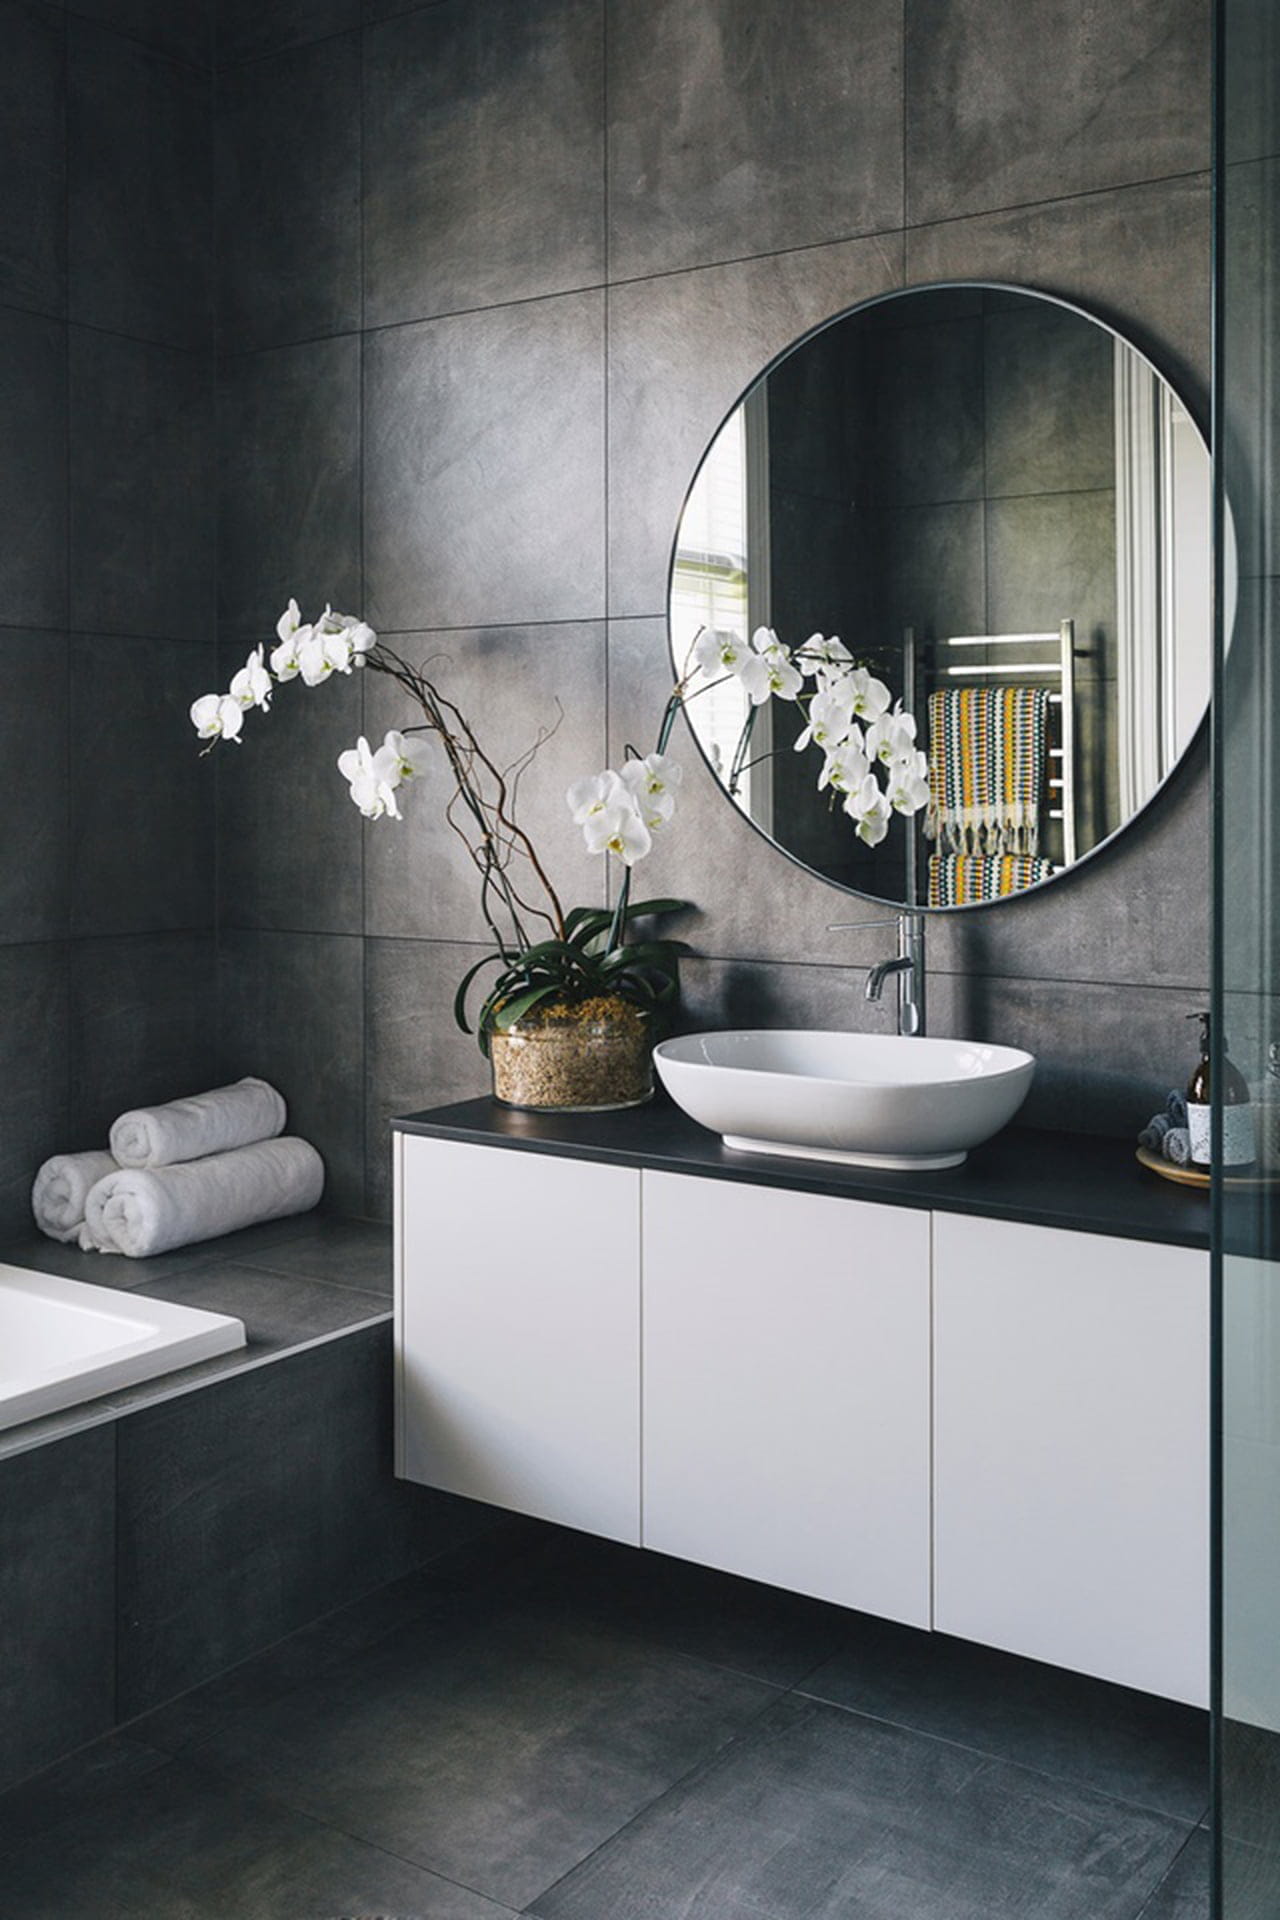 Ванная комната в серых тонах: Серая плитка в ванной с яркими акцентами .